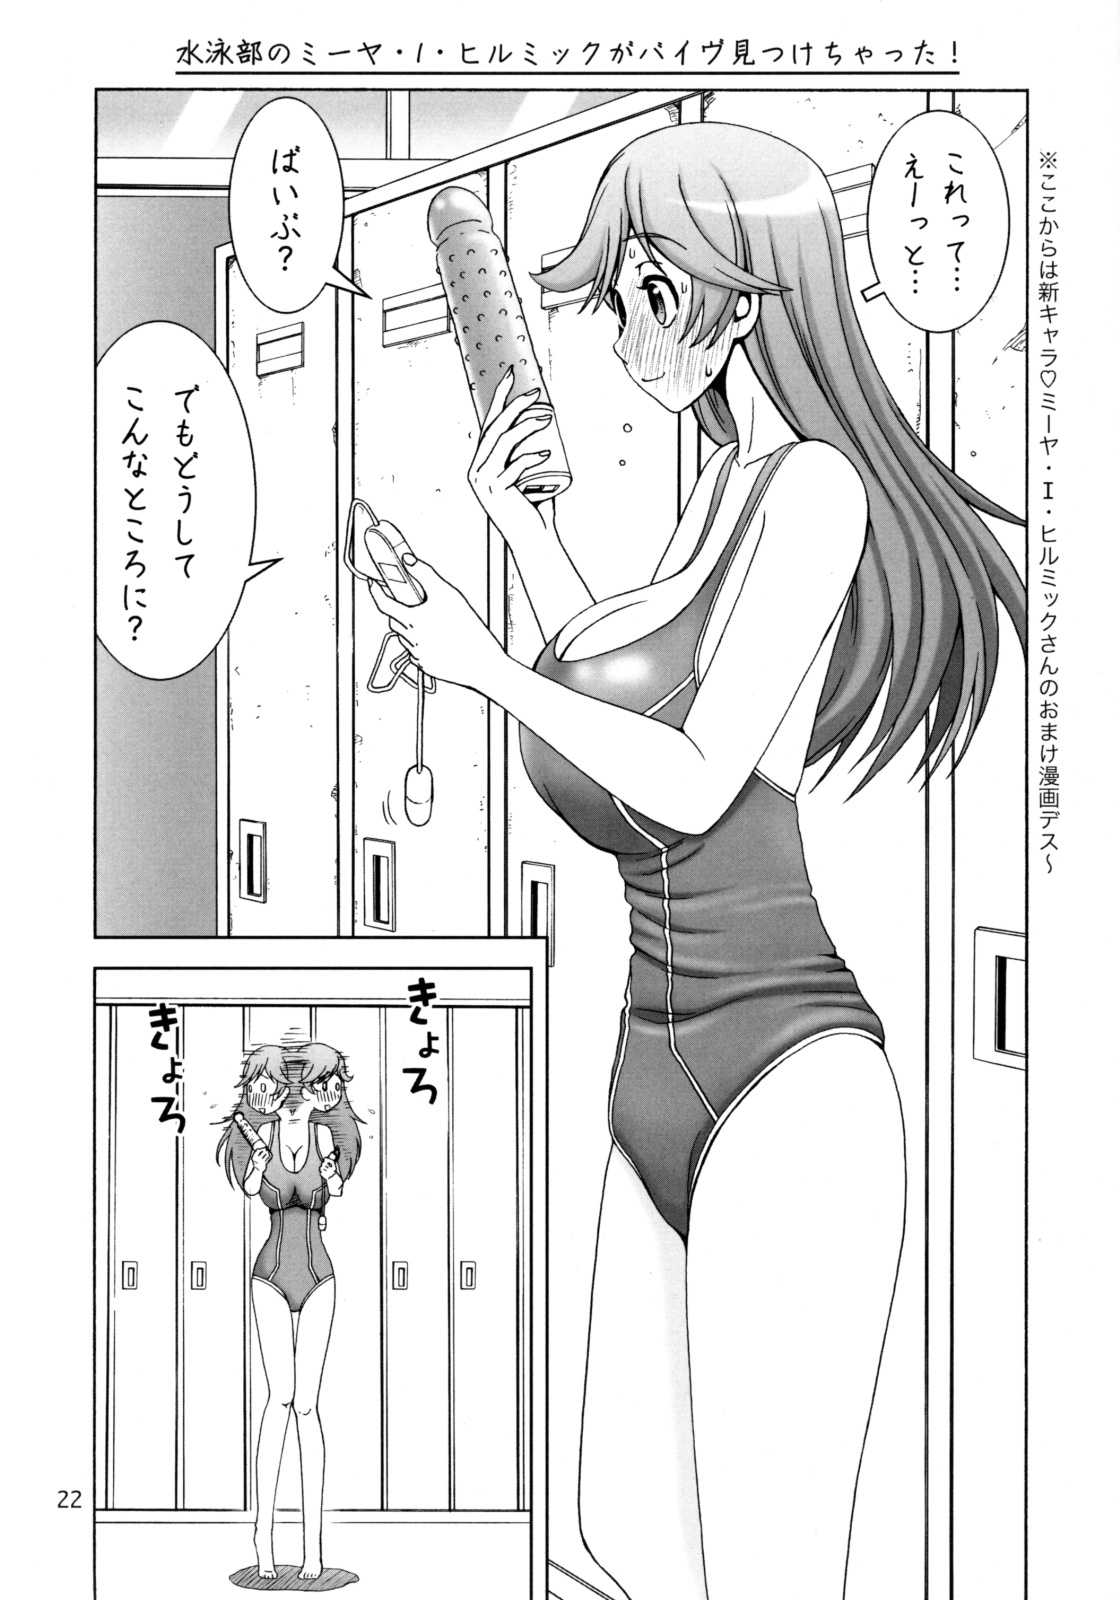 (SC40) [Narrow Cats] Villetta Sensei ga Ushirokara Zenkara Yarareteru! (Code Geass) (サンクリ40) [Narrow Cats] ヴィレッタ先生が後ろから前からヤられてる! (コードギアス 反逆のルルーシュ)